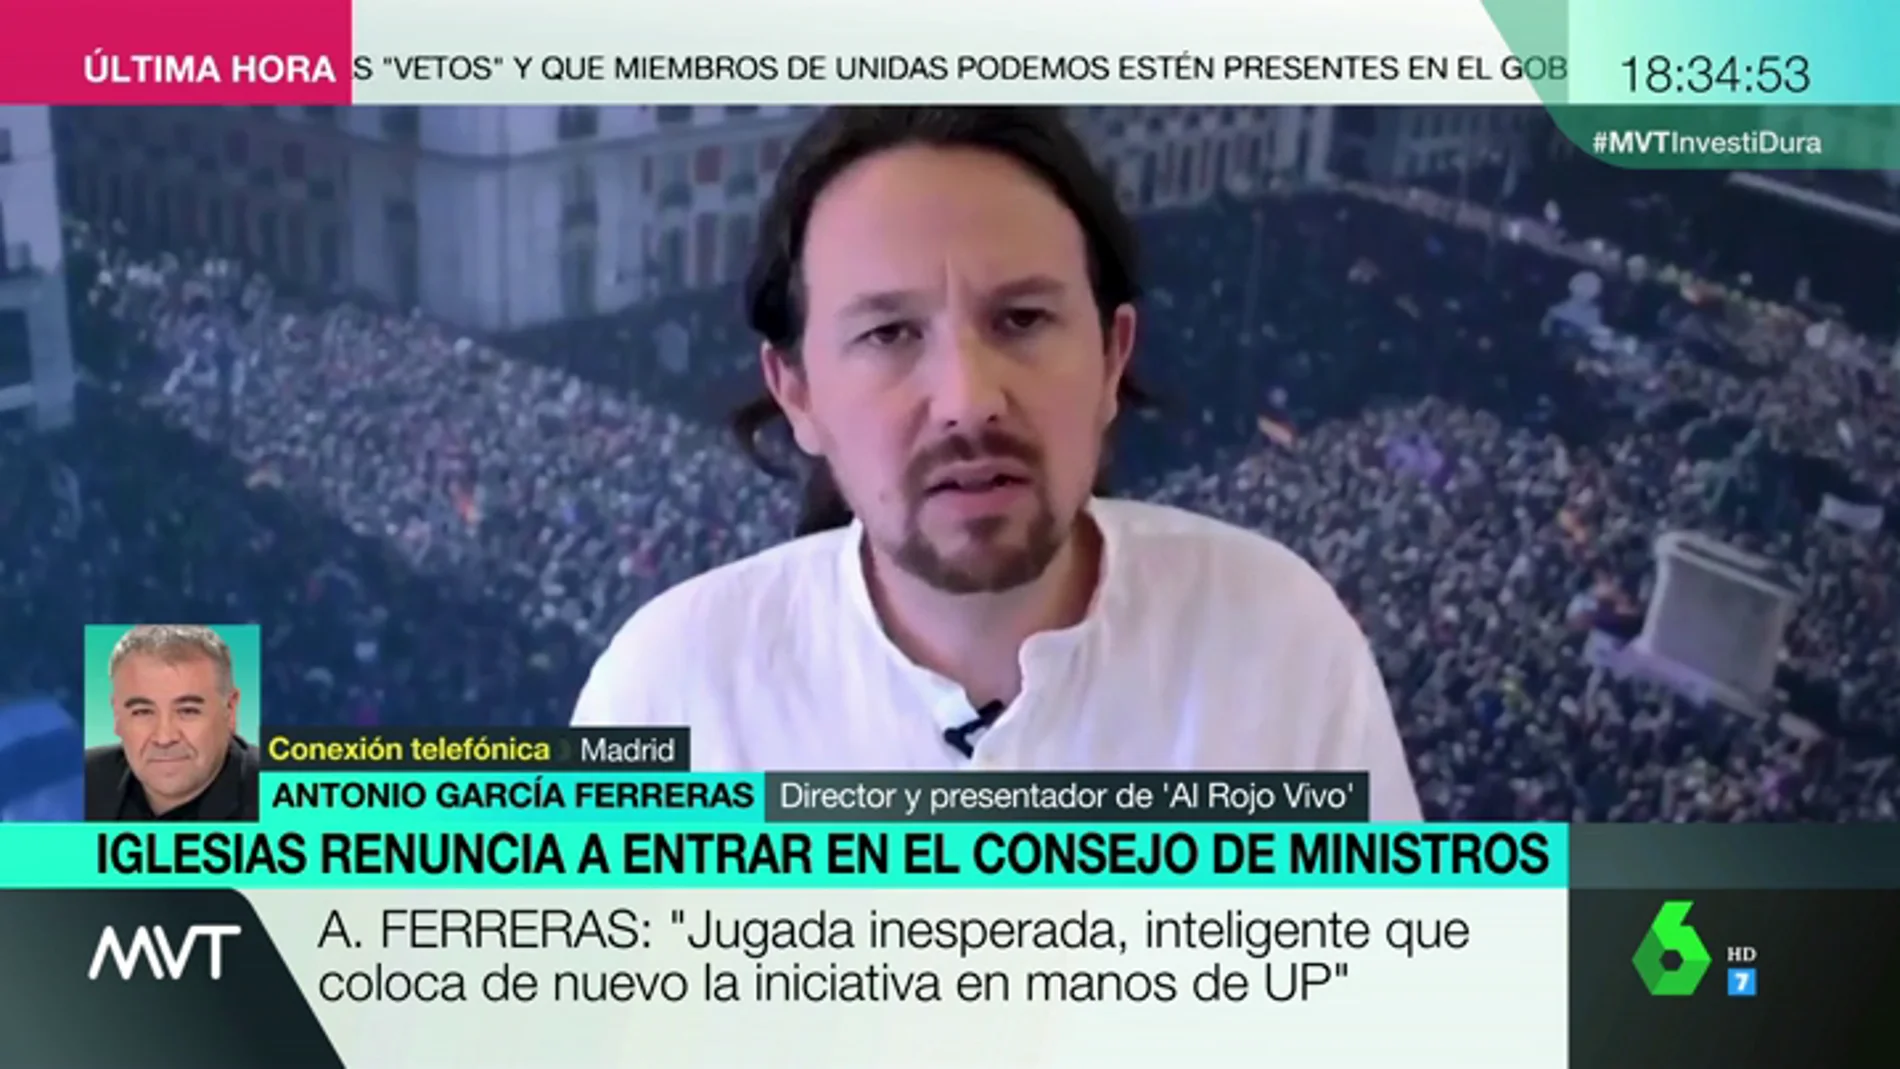 Ferreras analiza la renuncia de Iglesias a formar parte del Consejo de Ministros: "Es una jugada inesperada, inteligente"